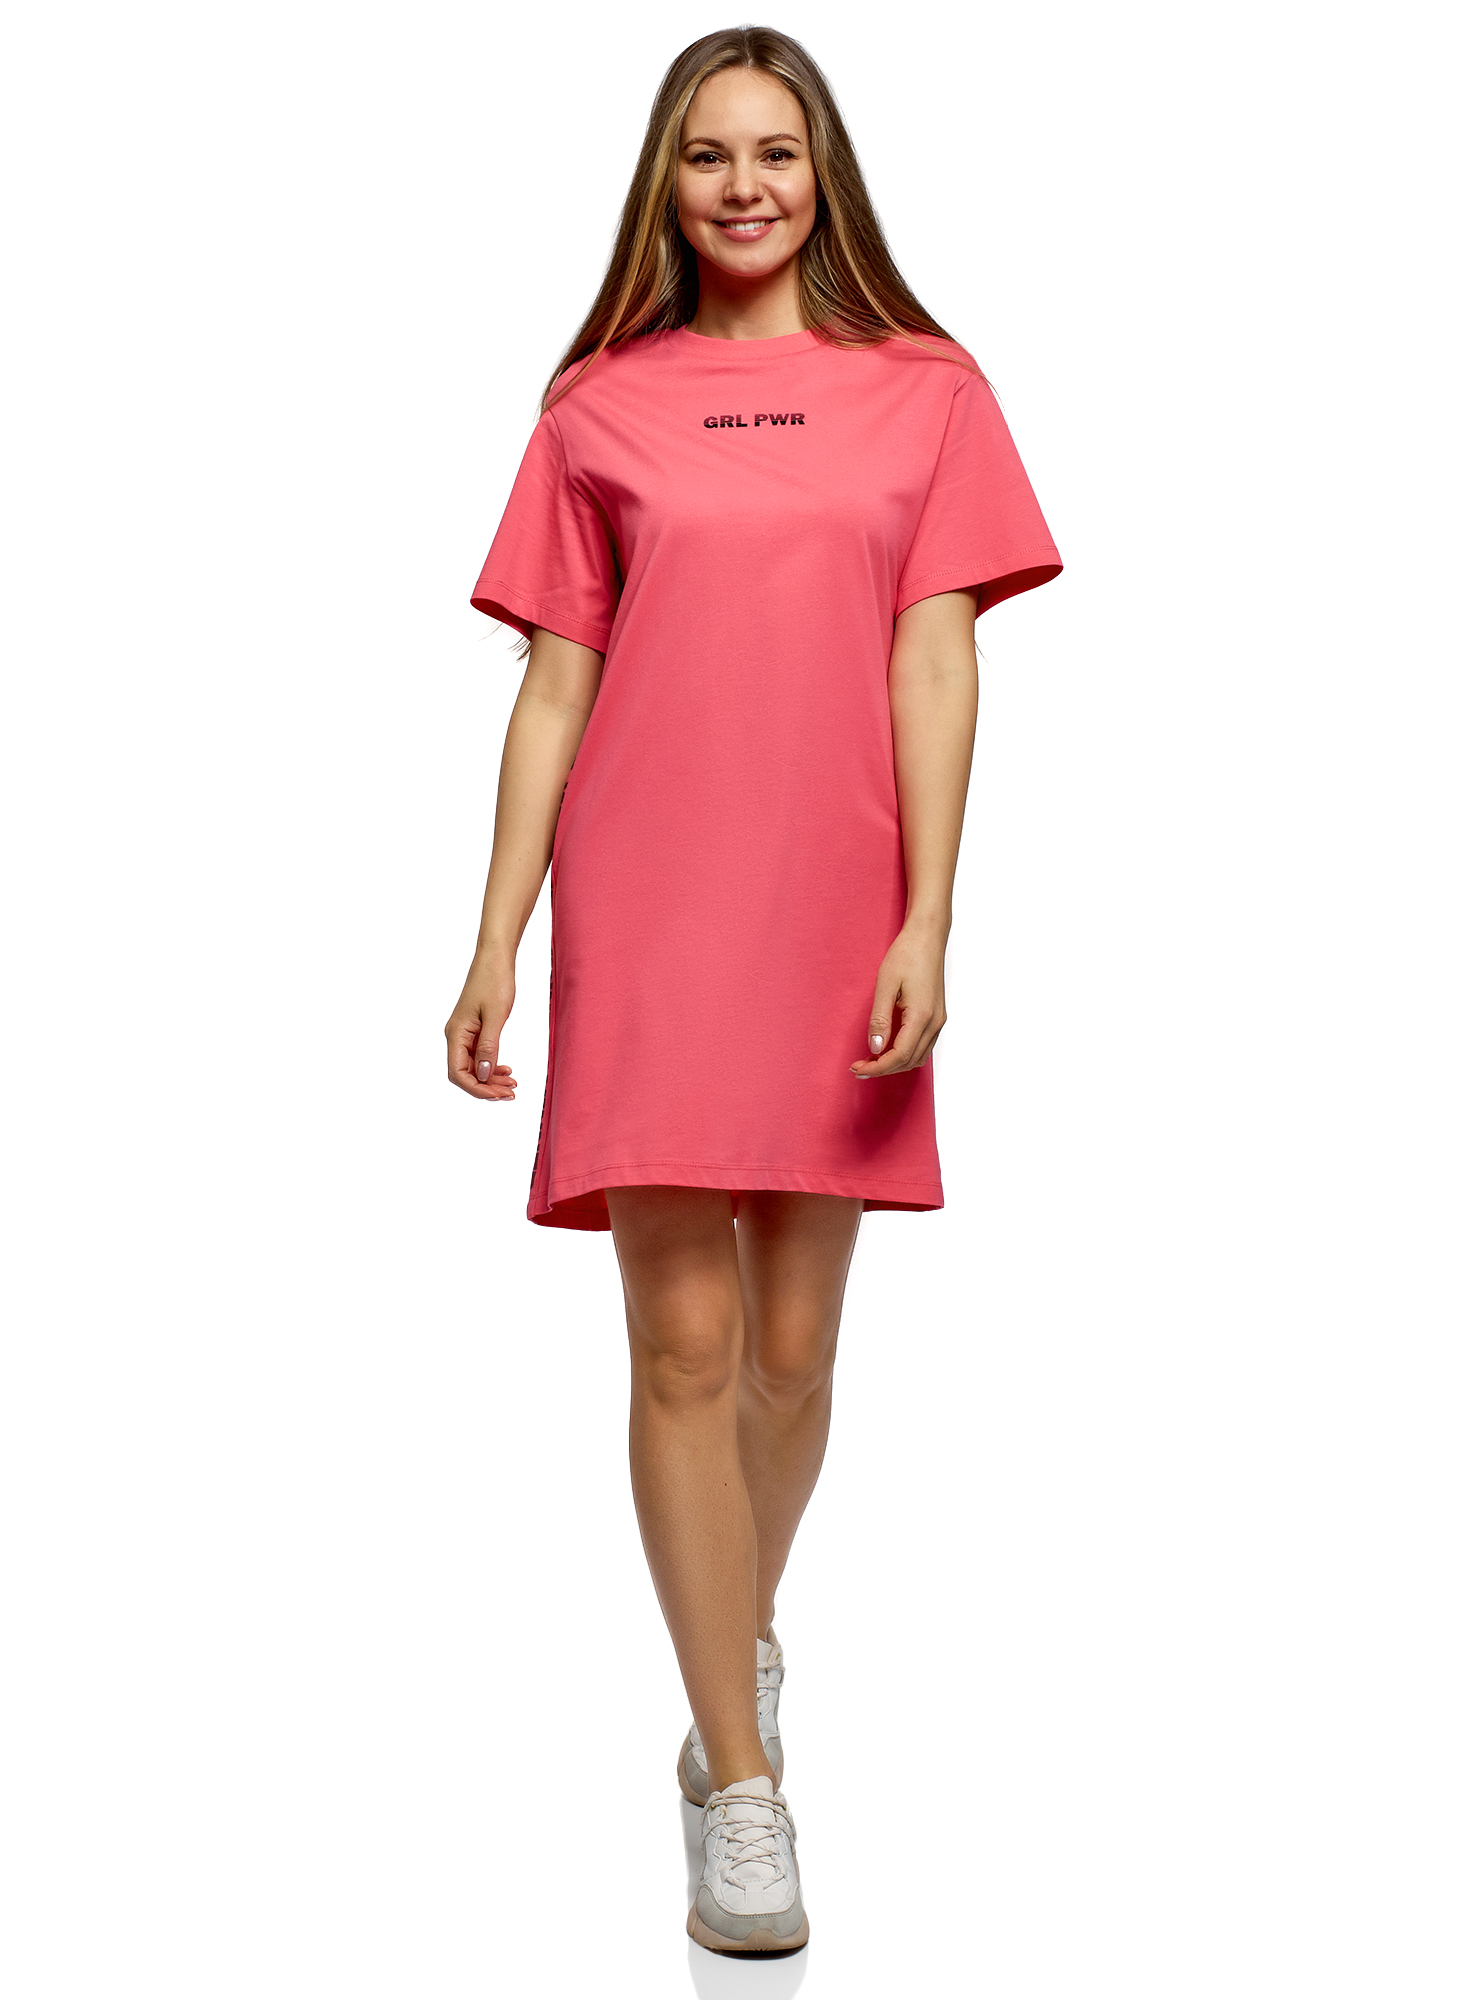 Платье женское oodji 14008041-1 розовое XS